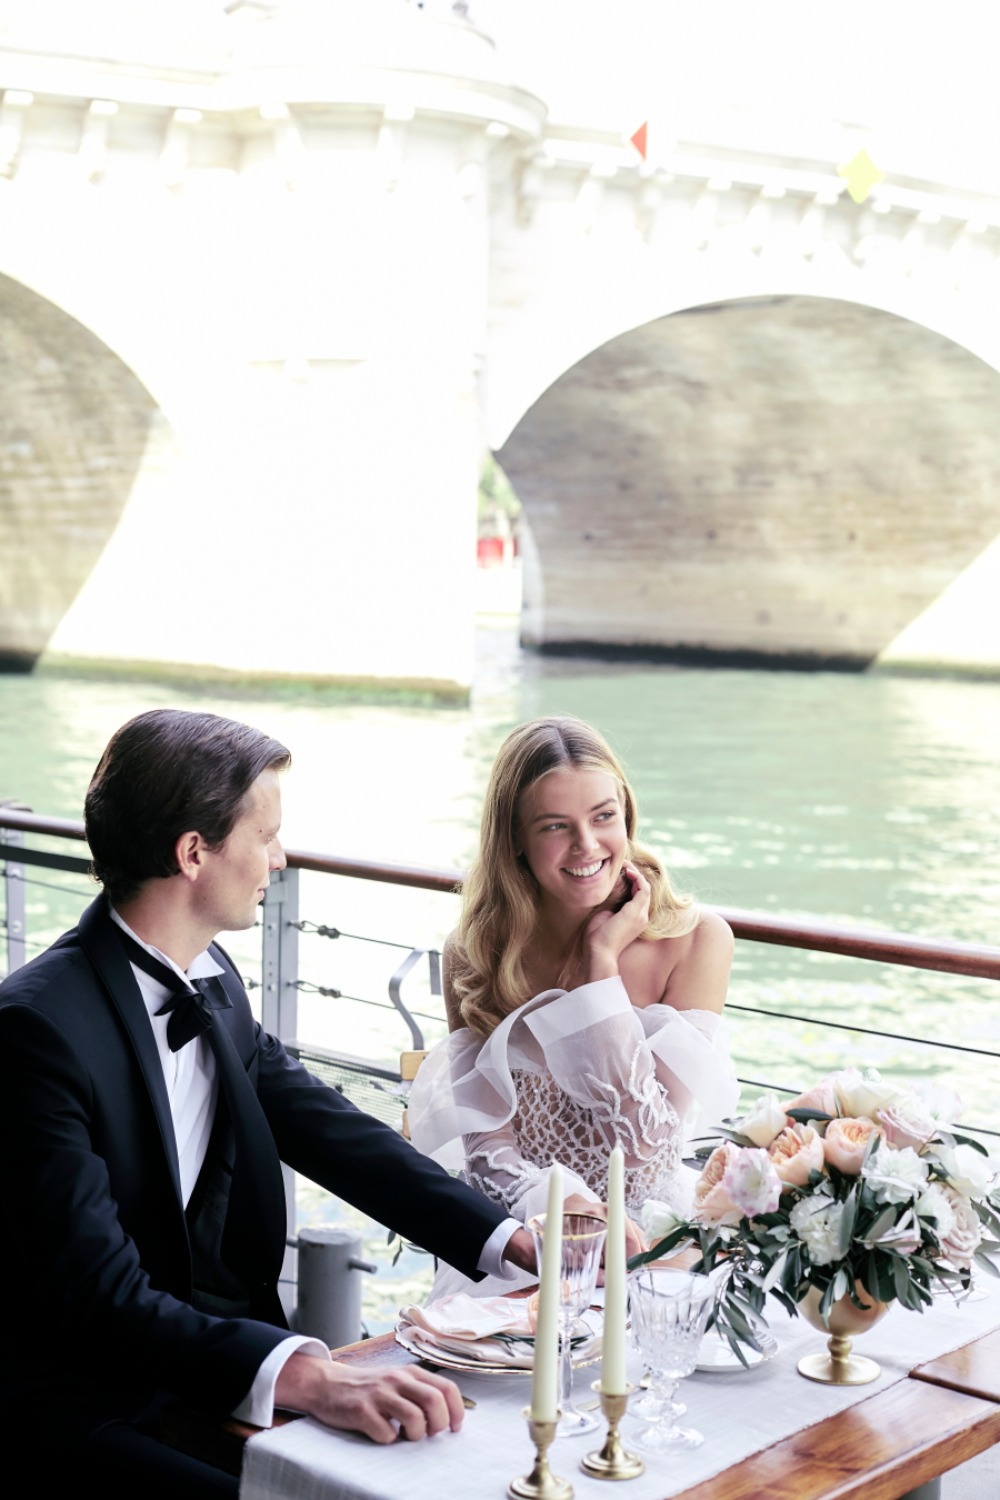 Romantic elopement ideas in Paris